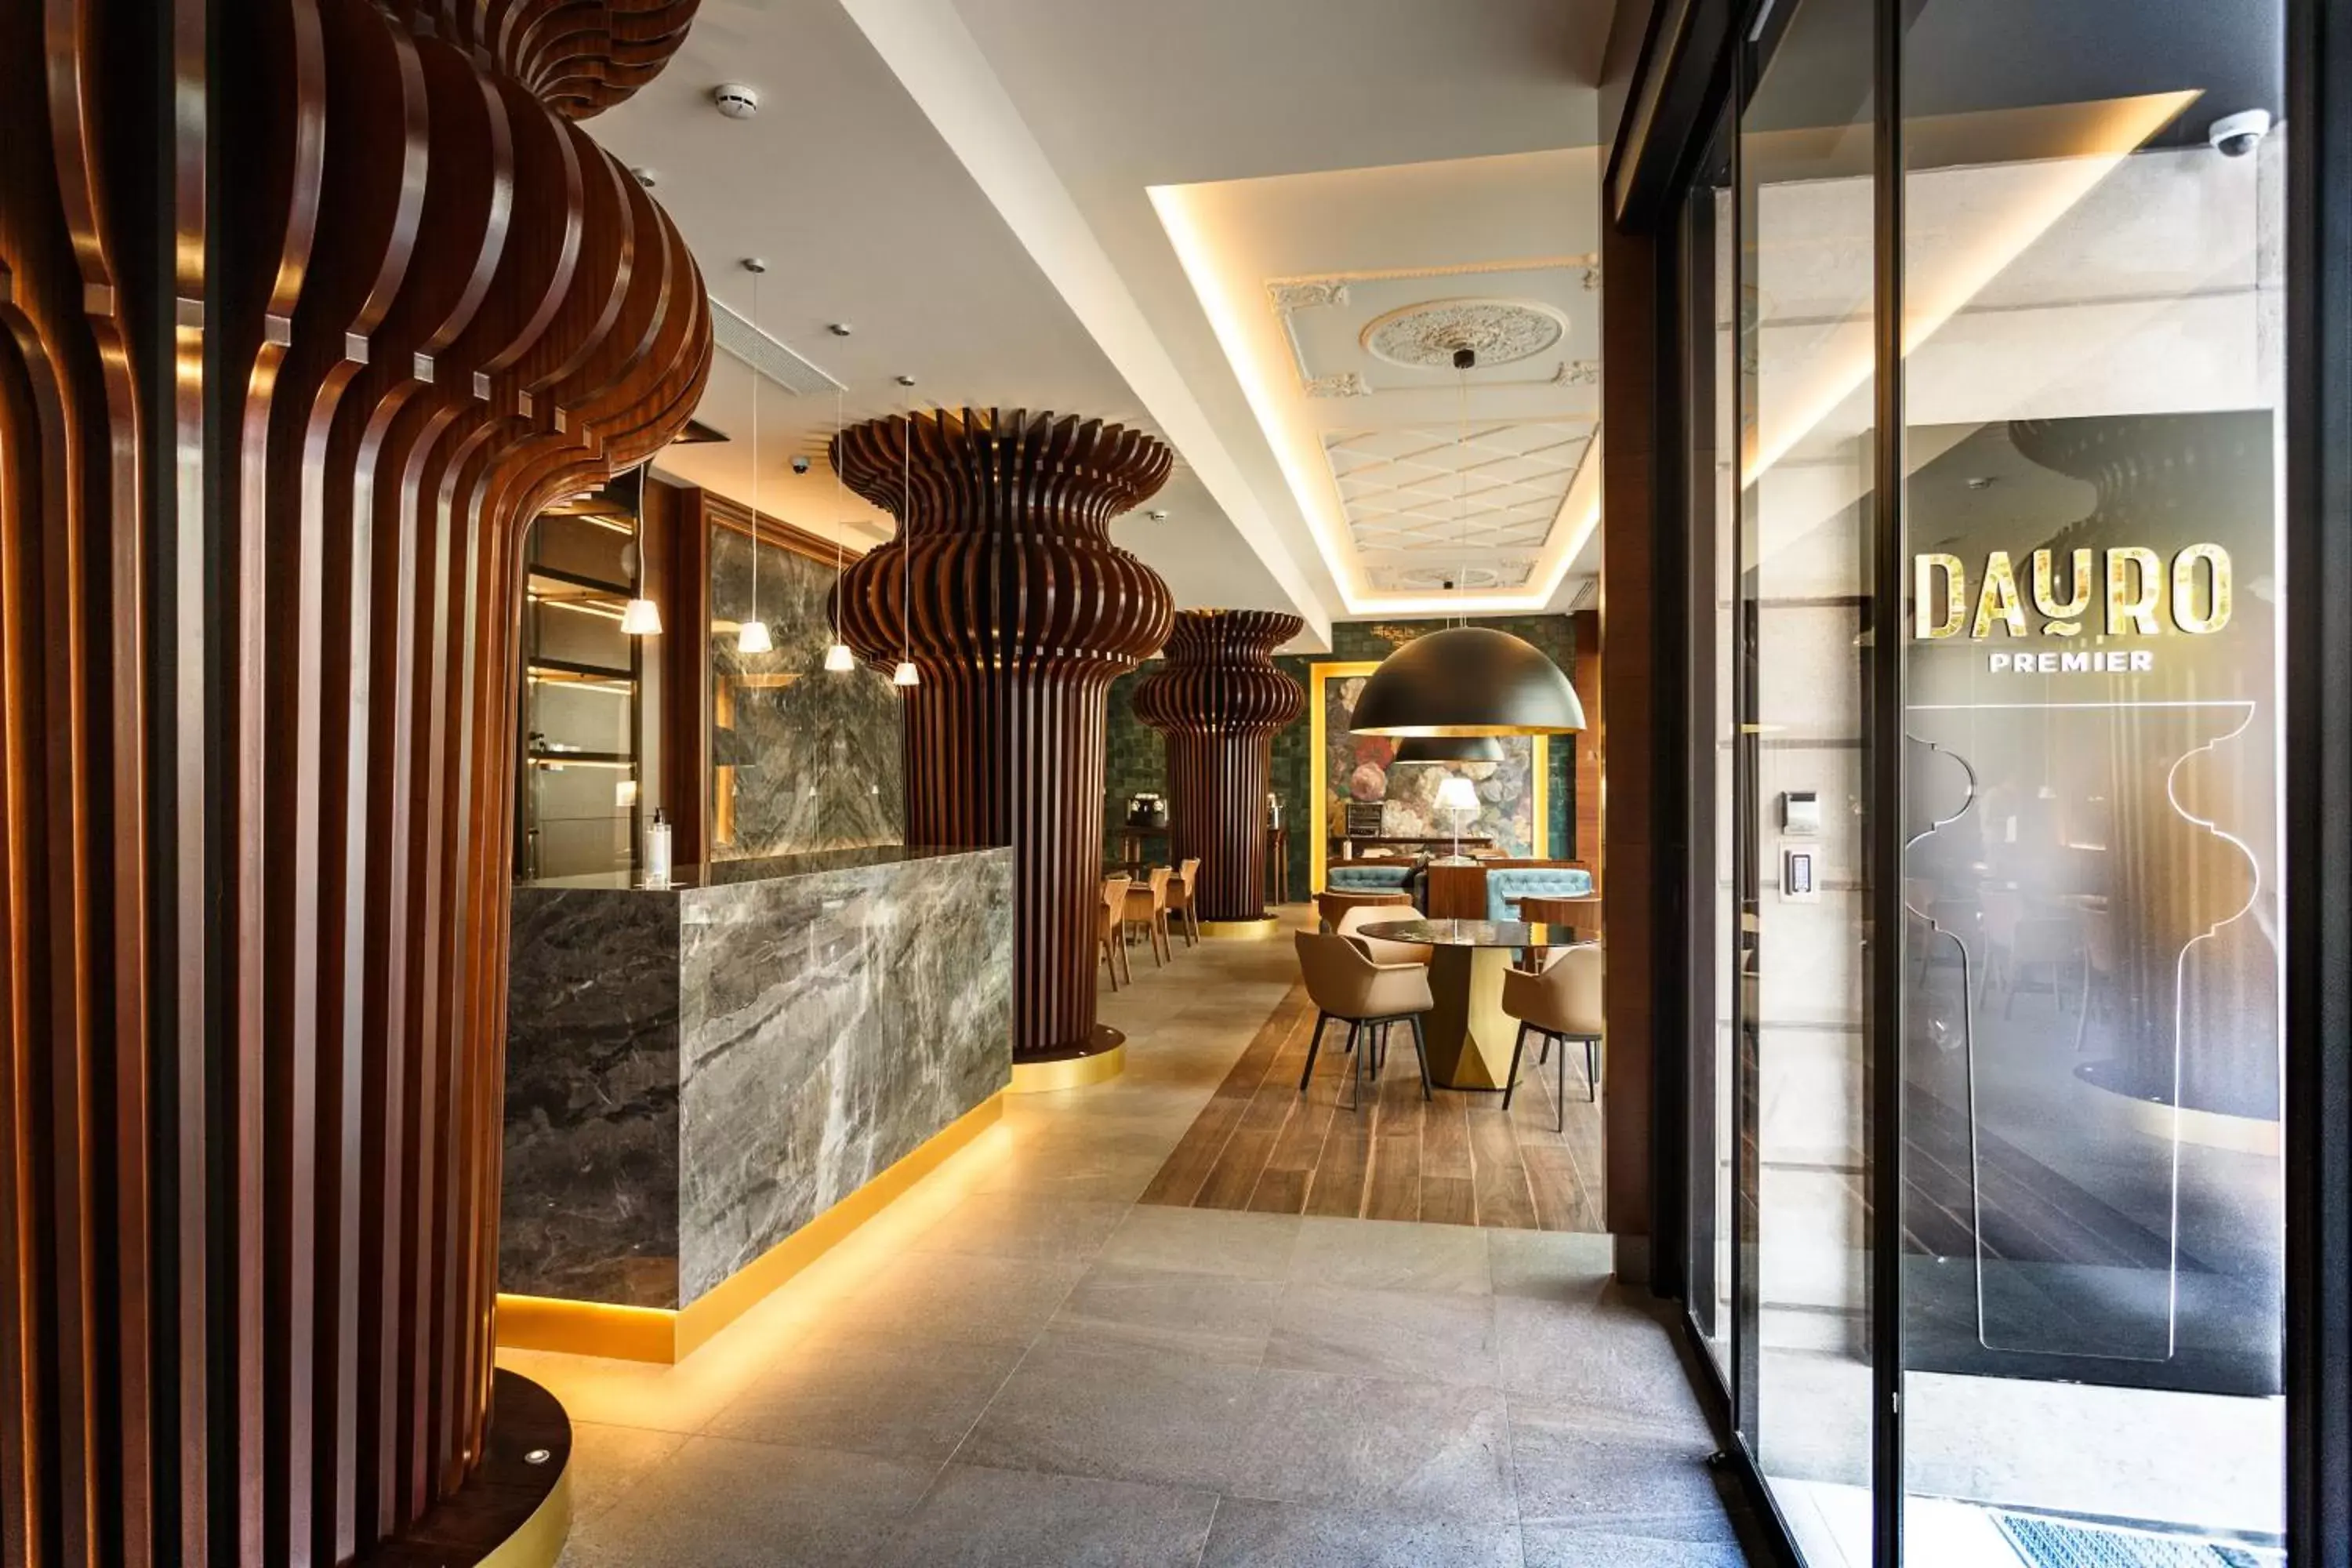 Lobby or reception in Hotel Dauro Premier